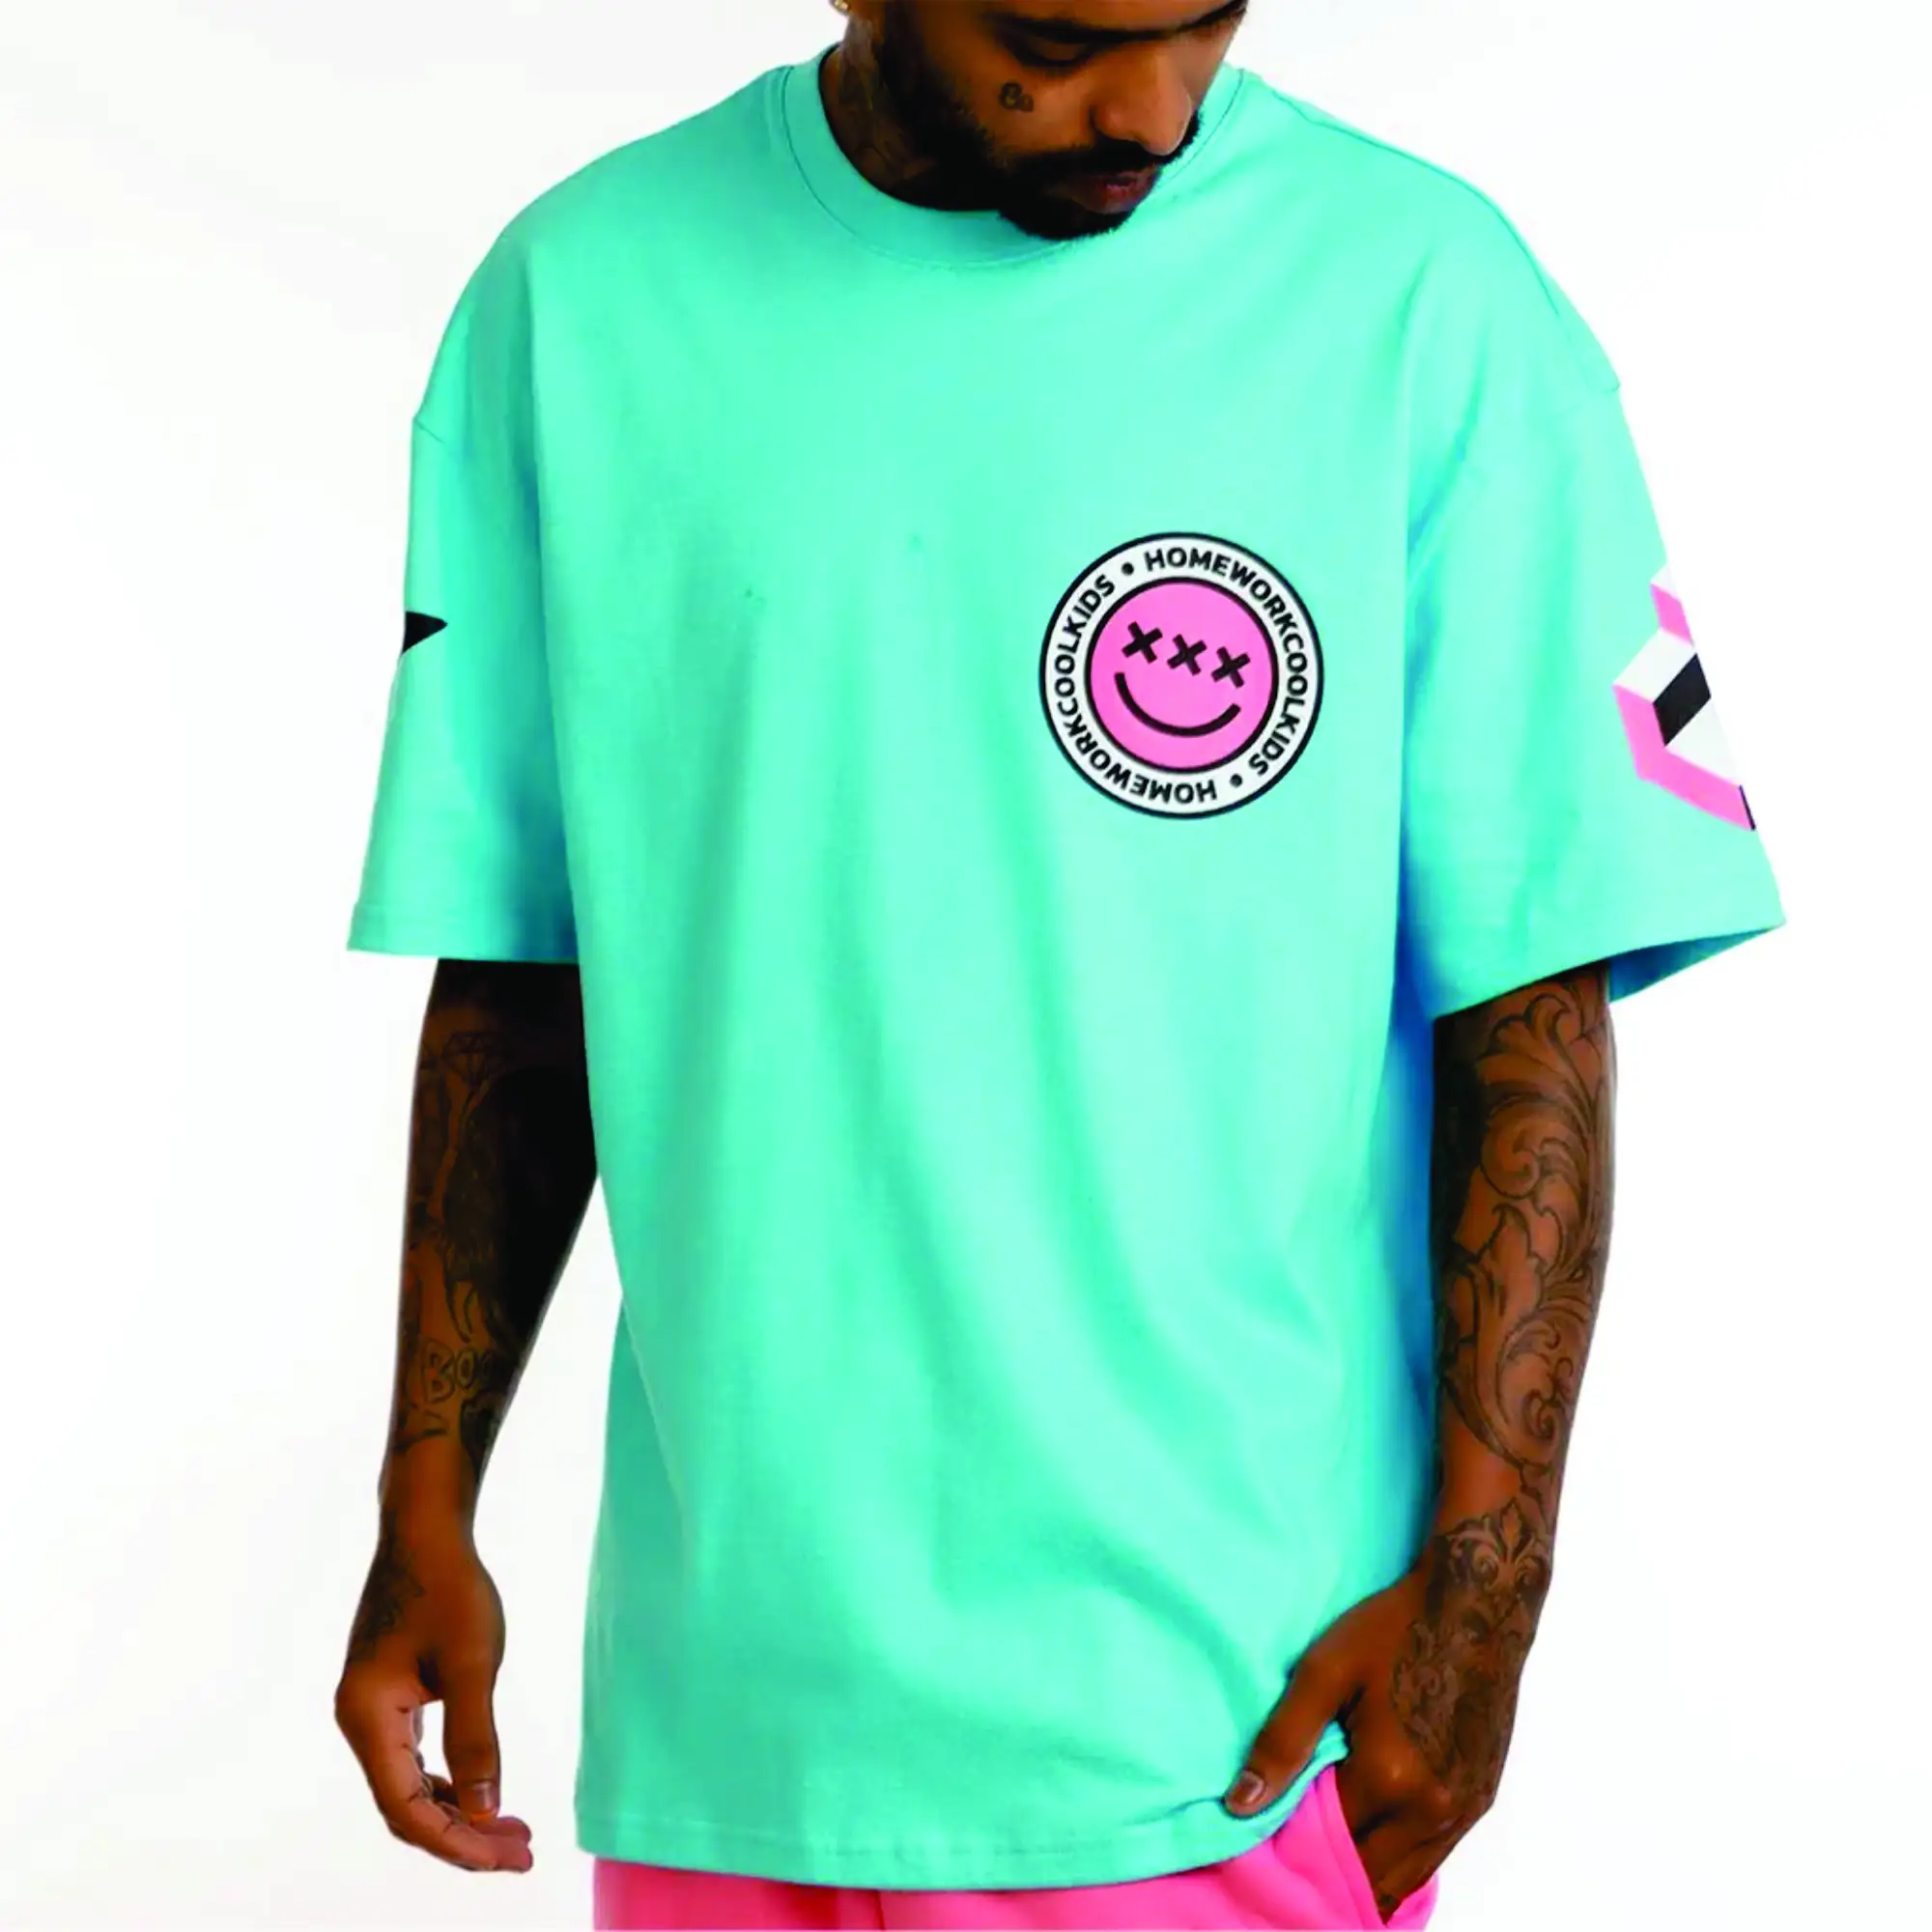 하이 칼라 스카이 블루와 화이트 남성 힙합 셔츠: 맞춤형 제조업체의 대형 스트리트 스타일 티셔츠